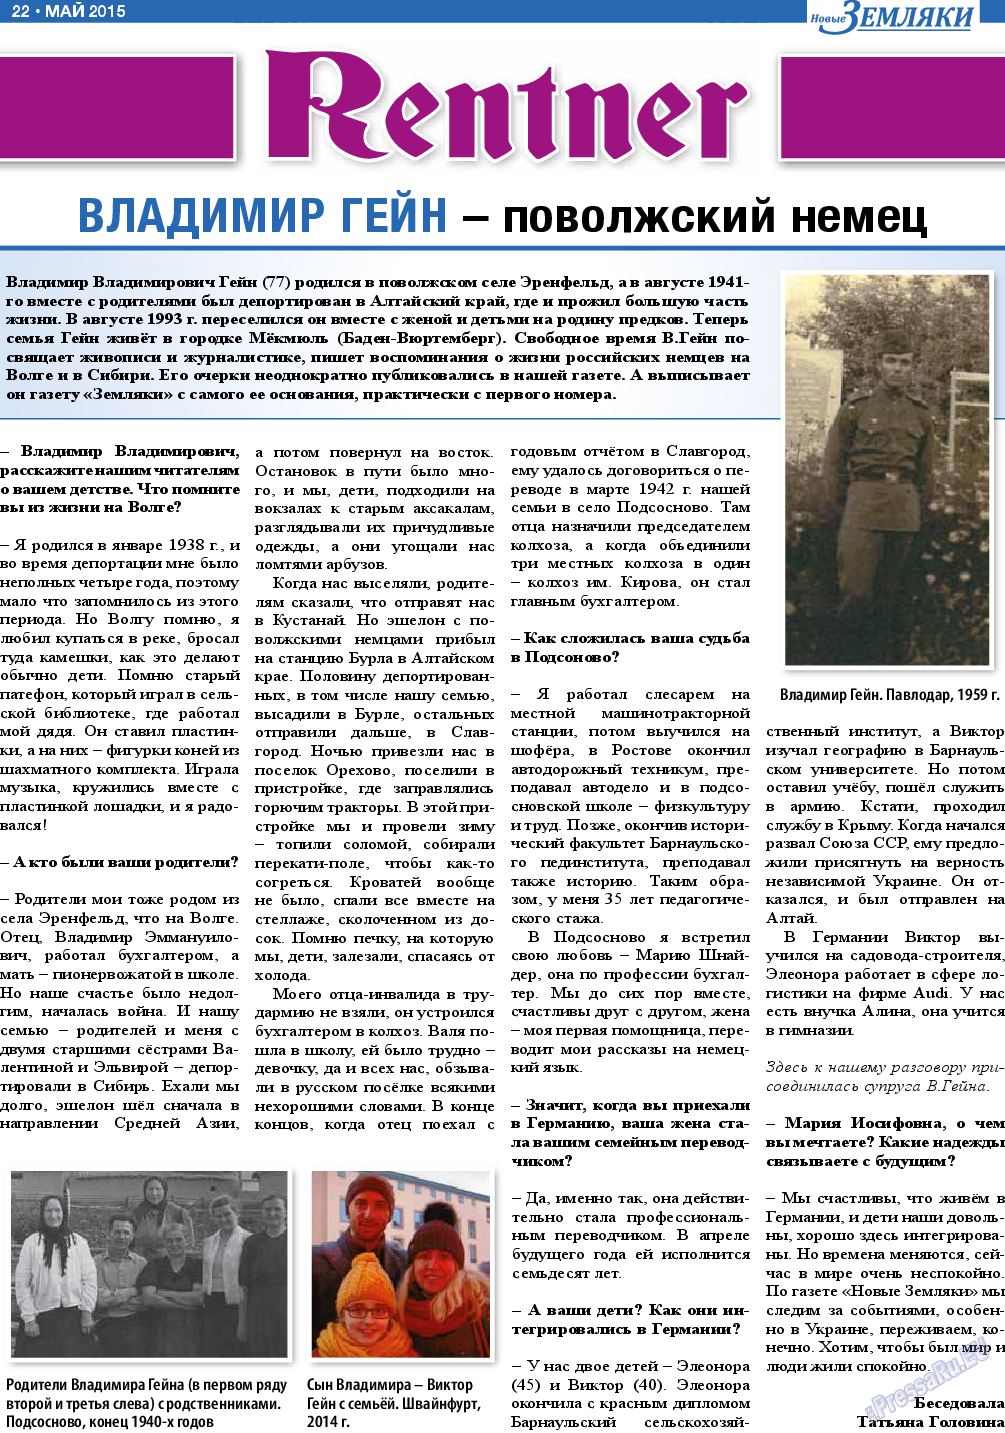 Новые Земляки, газета. 2015 №5 стр.22